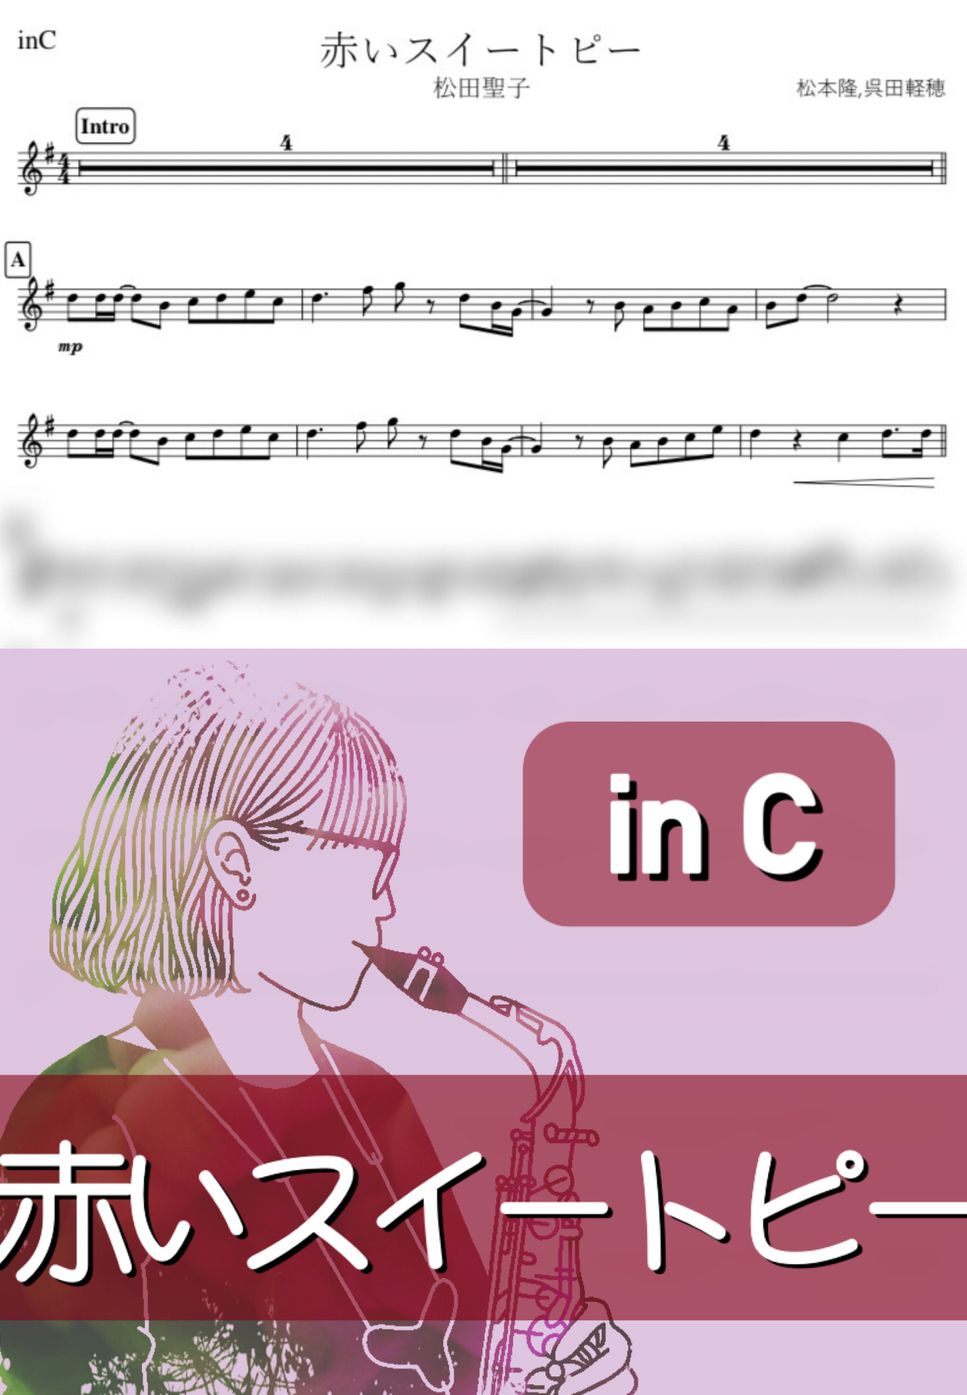 松田聖子 - 赤いスイートピー (C) by kanamusic